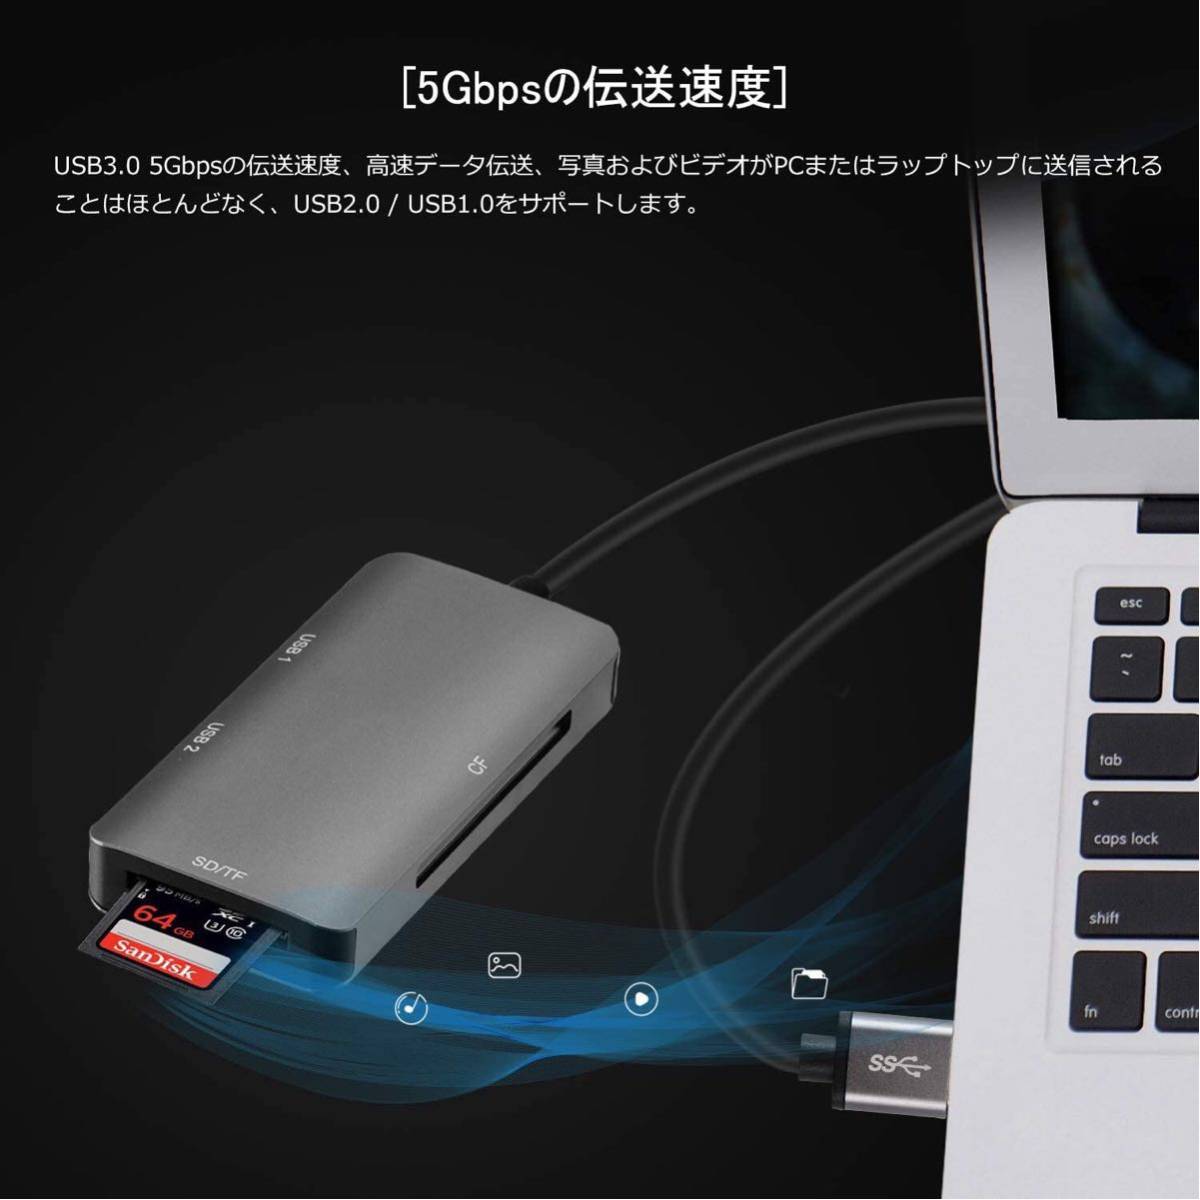 高速USB 3.0 5-in-1カードリーダーはCF / SD/マイクロSD / TFカードを読み取ることができます80cm USBインターフェイスはキーボード(USB)